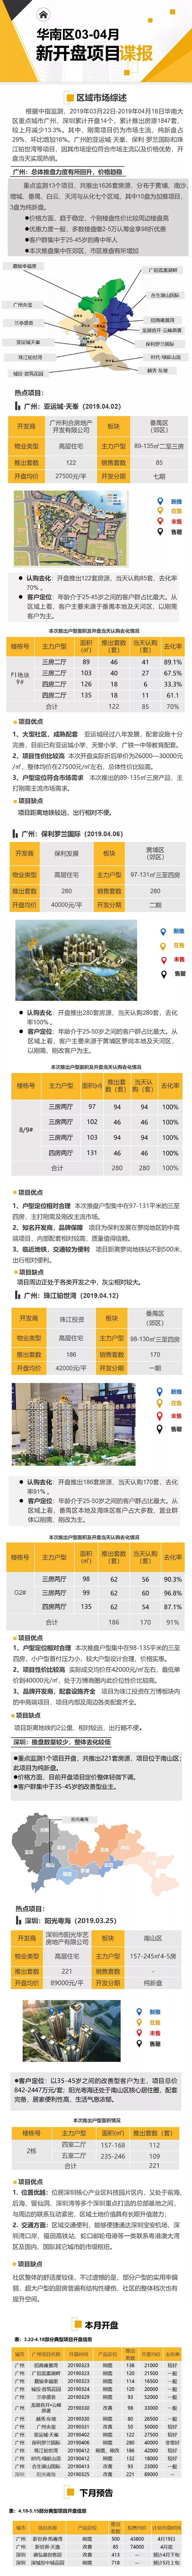 华南区新开盘谍报：“小阳春”市场活跃度提升 纯新盘推货数量增加